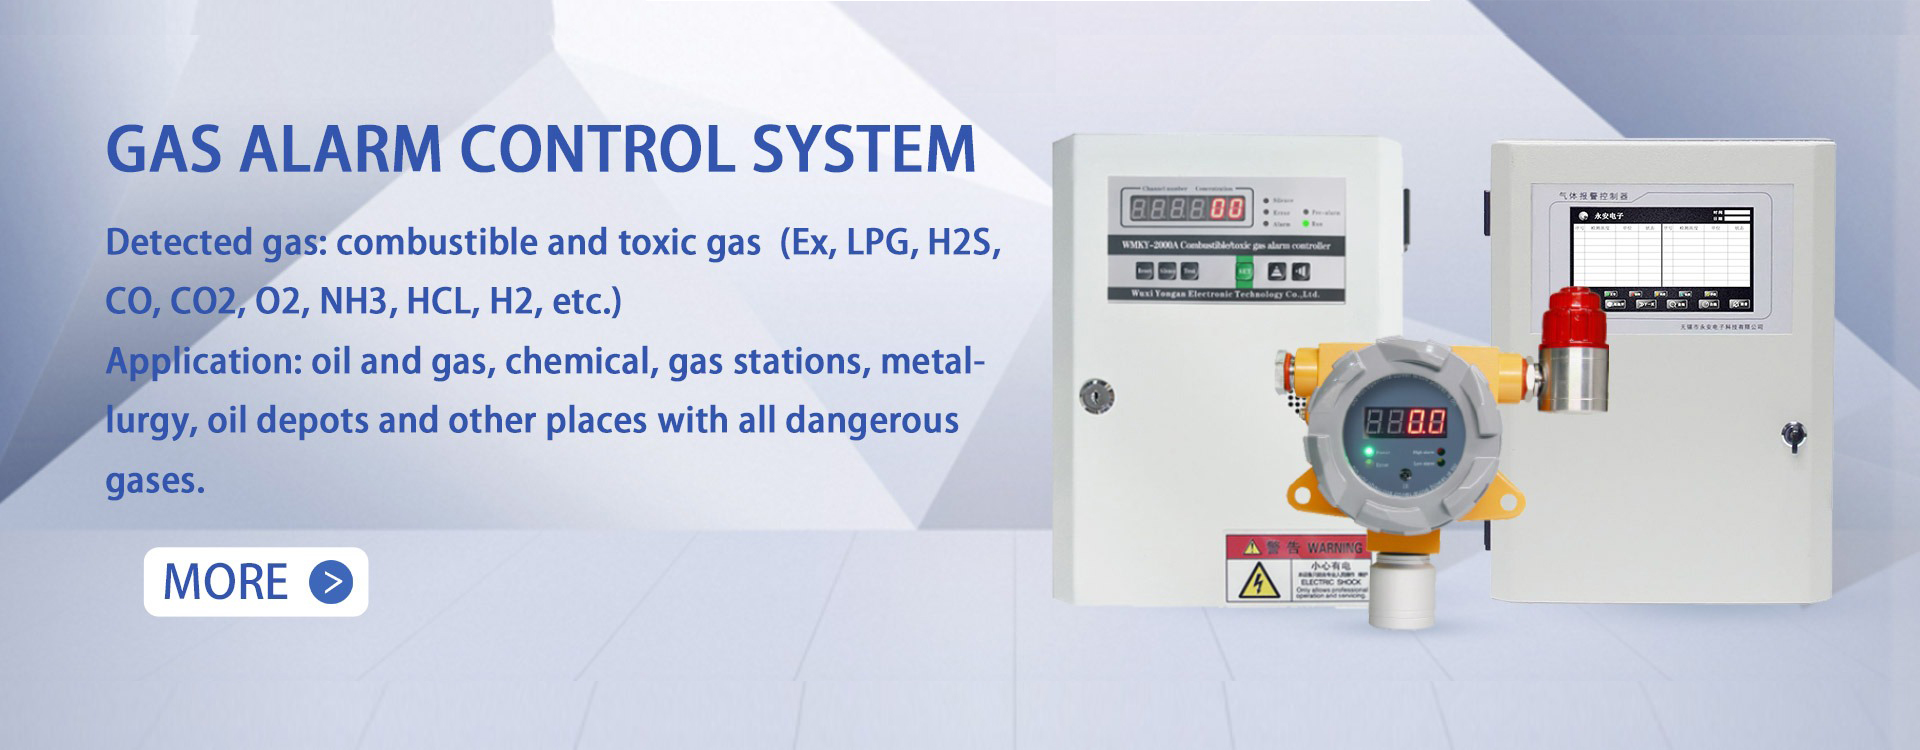 GAS ALARM CONTROL SYSTEM